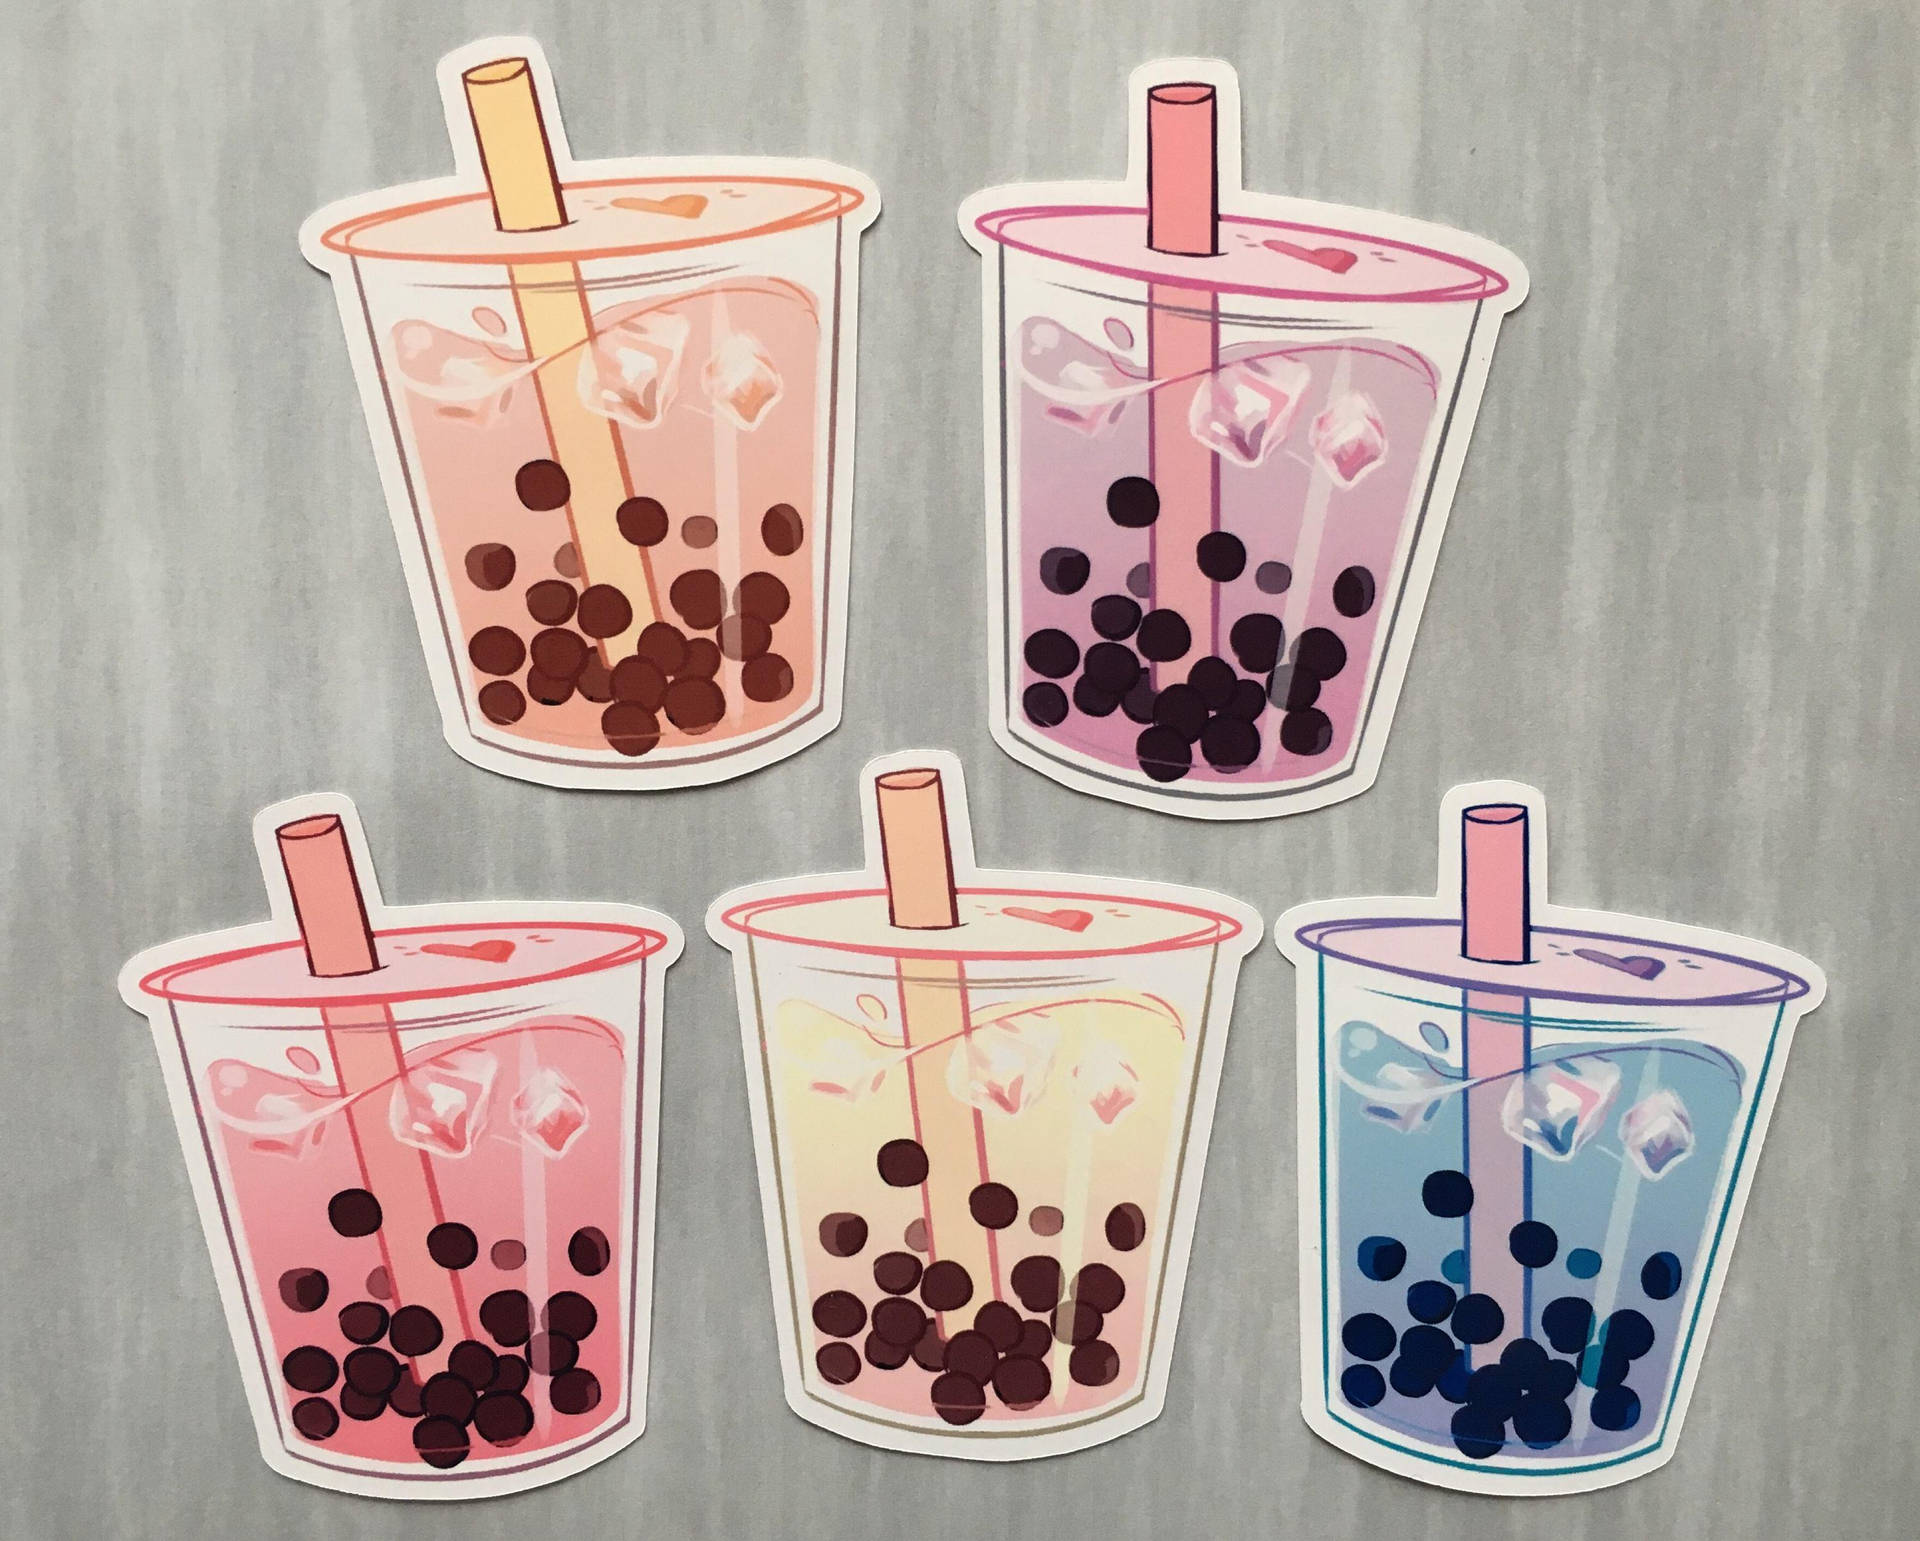 100+] Bubble Tea Wallpapers 